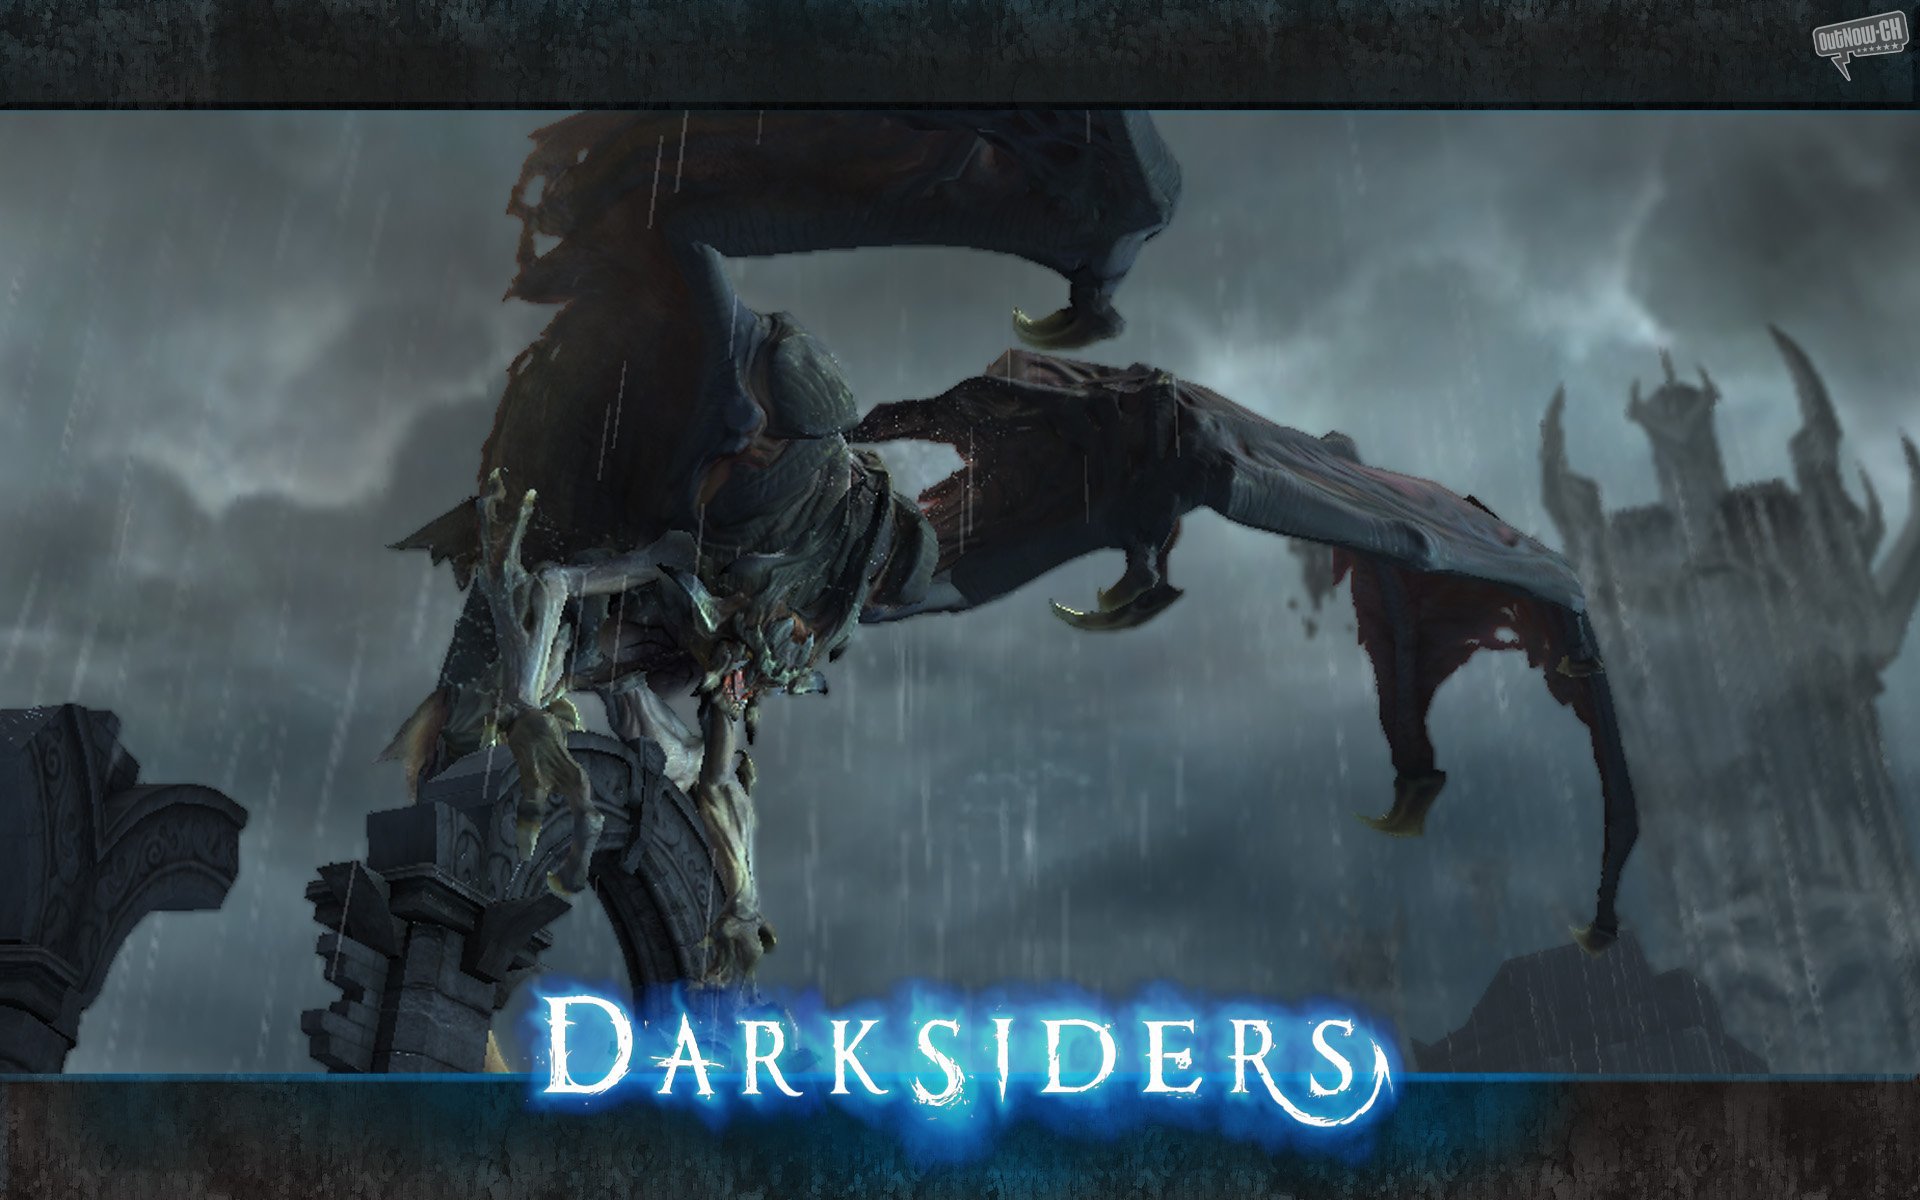 Darksiders wallpapers | Darksiders stock photos